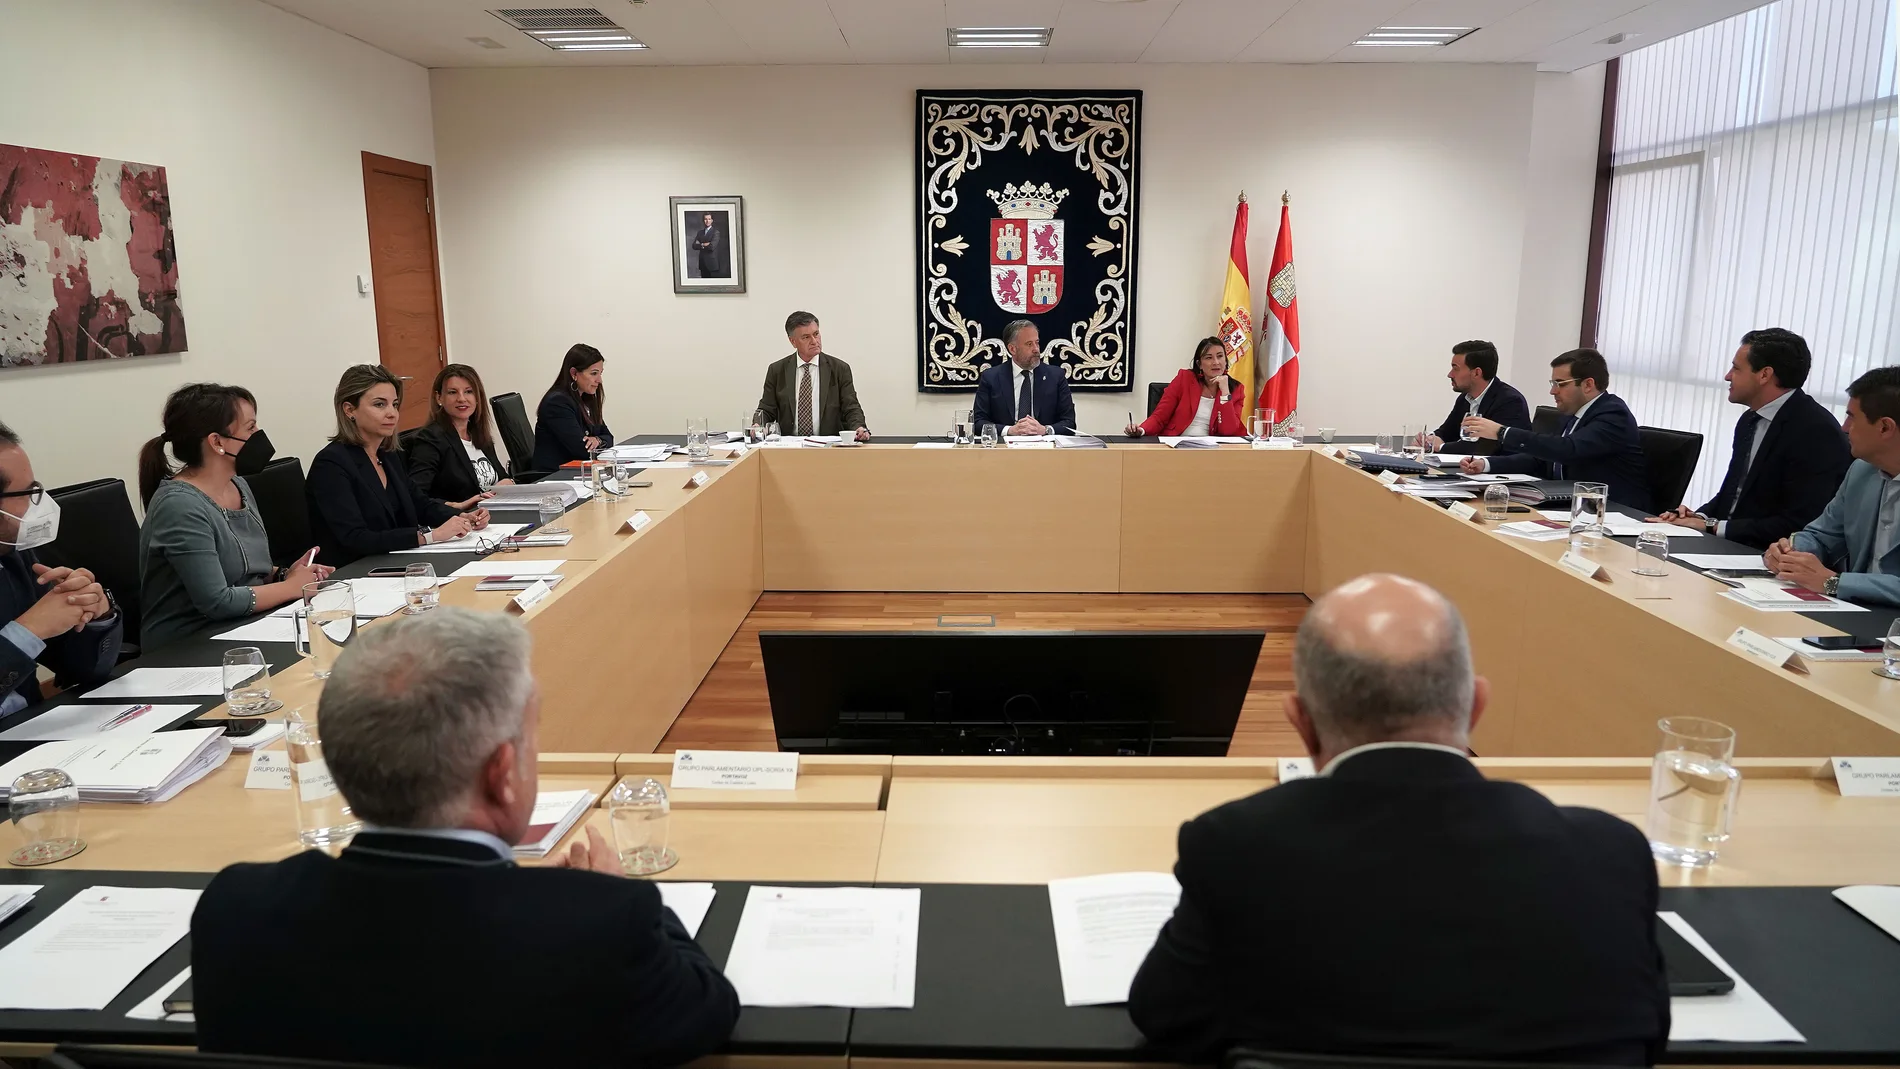 El presidente de las Cortes, Carlos Pollán, preside la reunión de la Junta de Portavoces